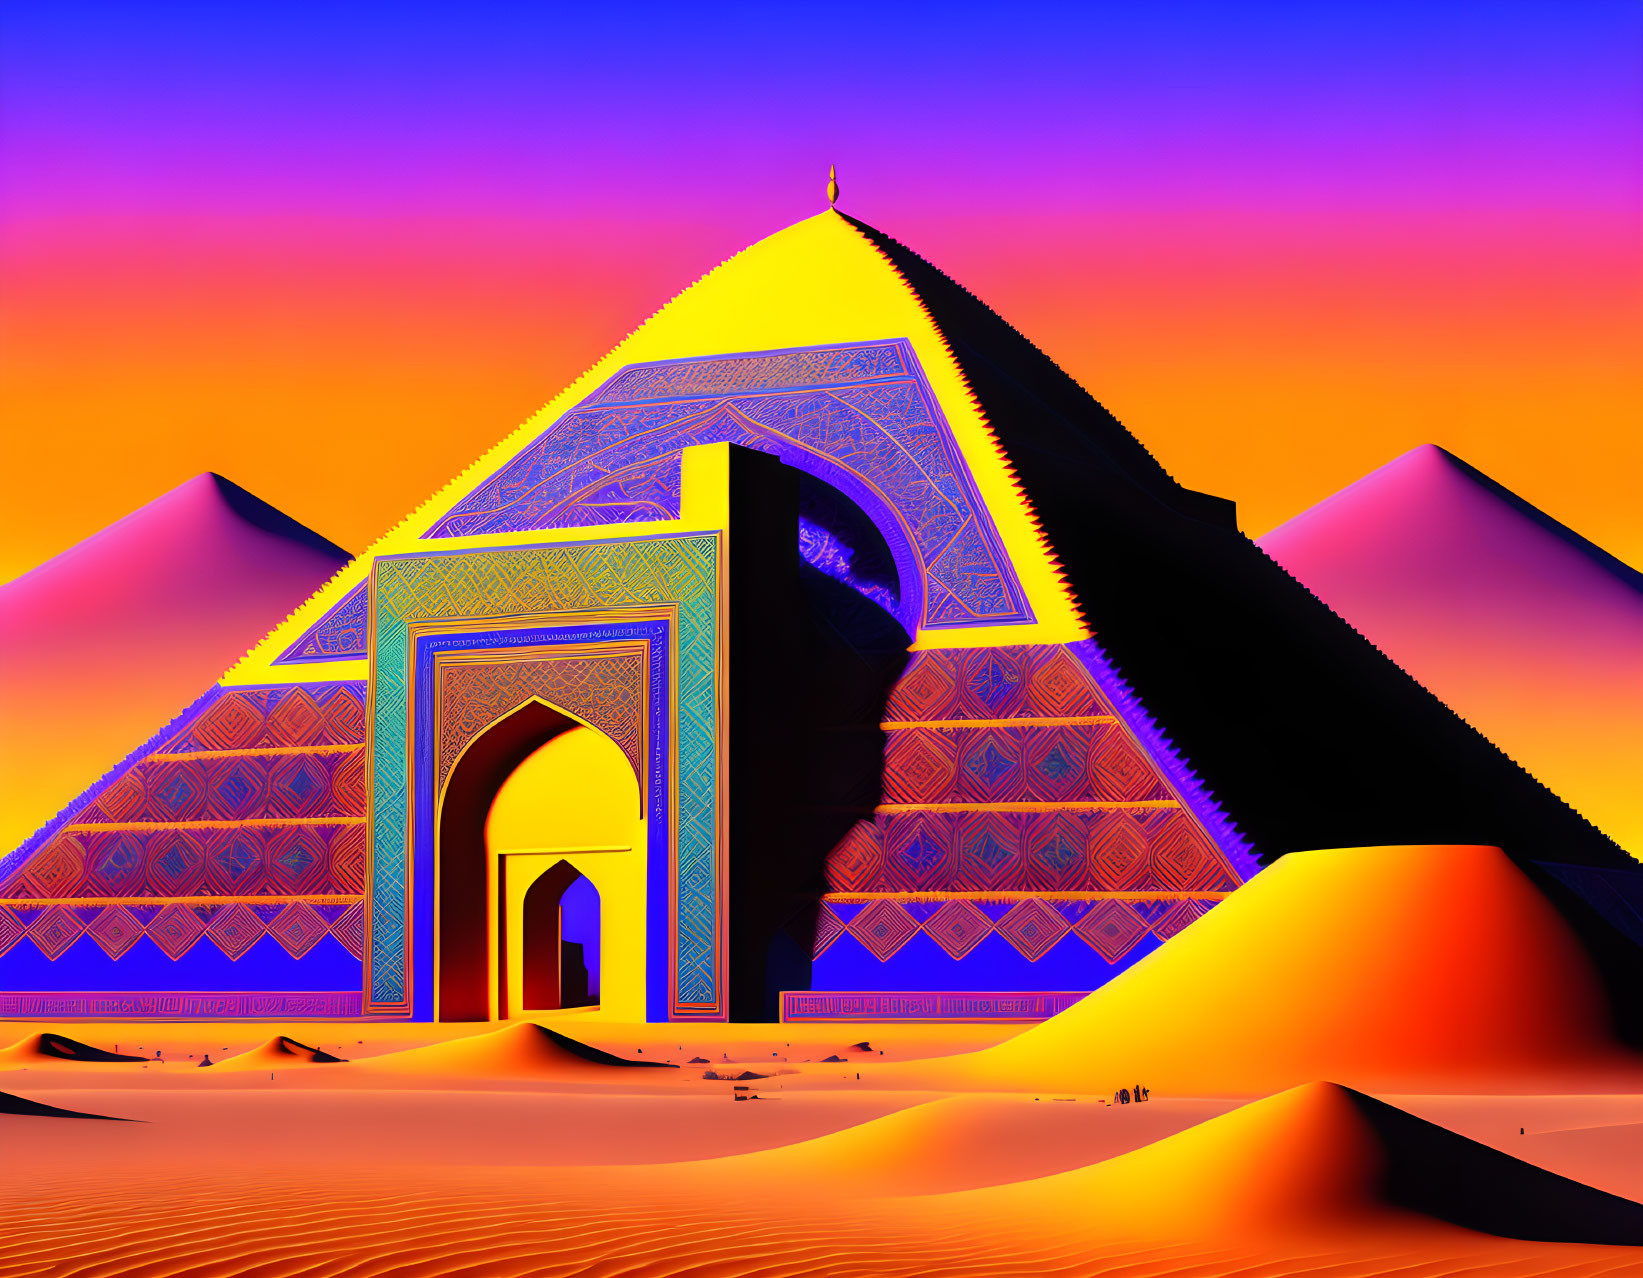 Digital art: Ornate Islamic gate with pyramids in desert landscape